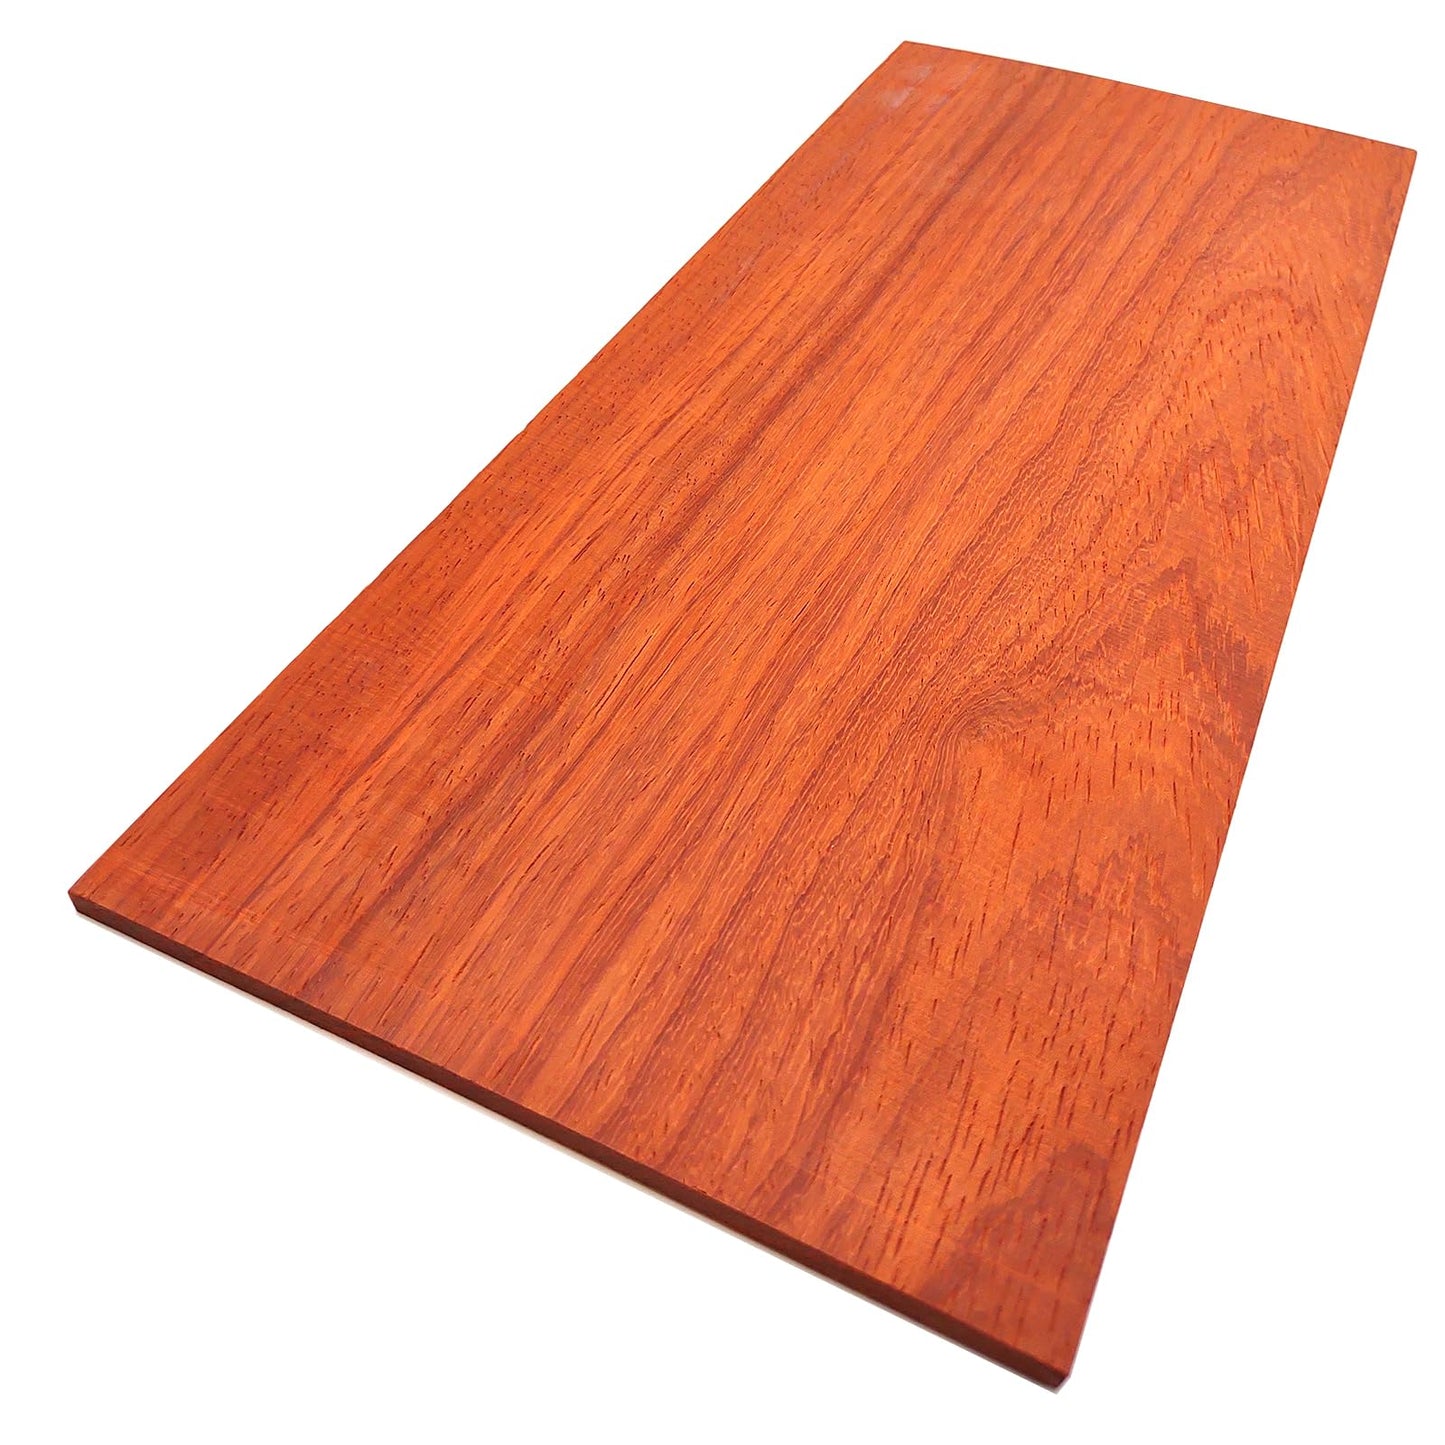 The Hardwood Edge Padauk Hardwood Planks - 2-Pack Padauk Unfinished Wood Blanks - 1/8’’ (3mm) 100% Pure Hardwood - Laser Engraving Blanks - Exotic